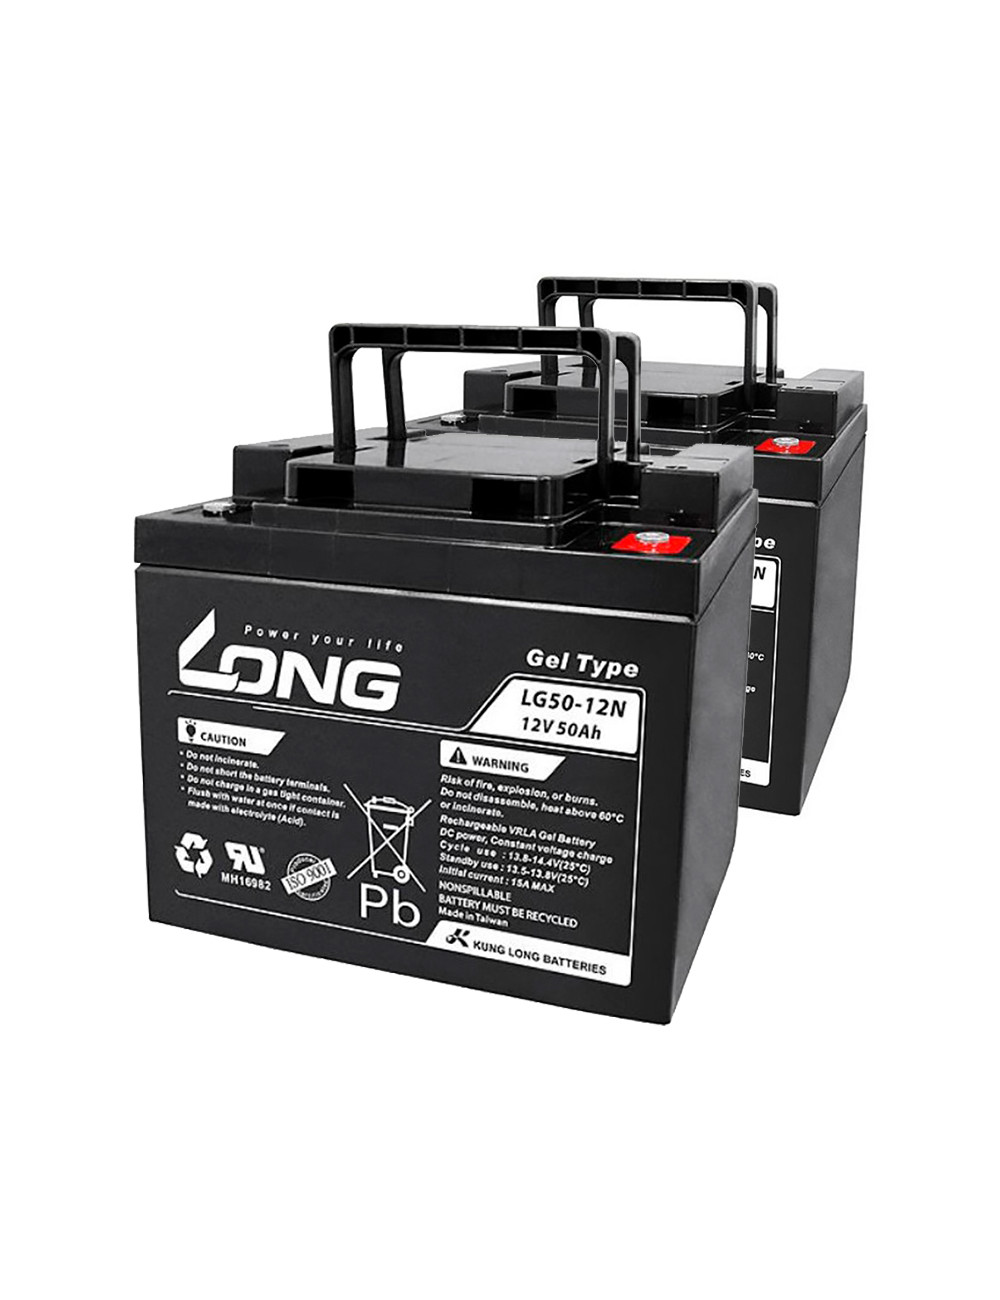 Pacote 2 baterias de gel para Quickie Tango de Sunrise Medical de 12V 50Ah C20 ciclo profundo Long LG50-12N - 1